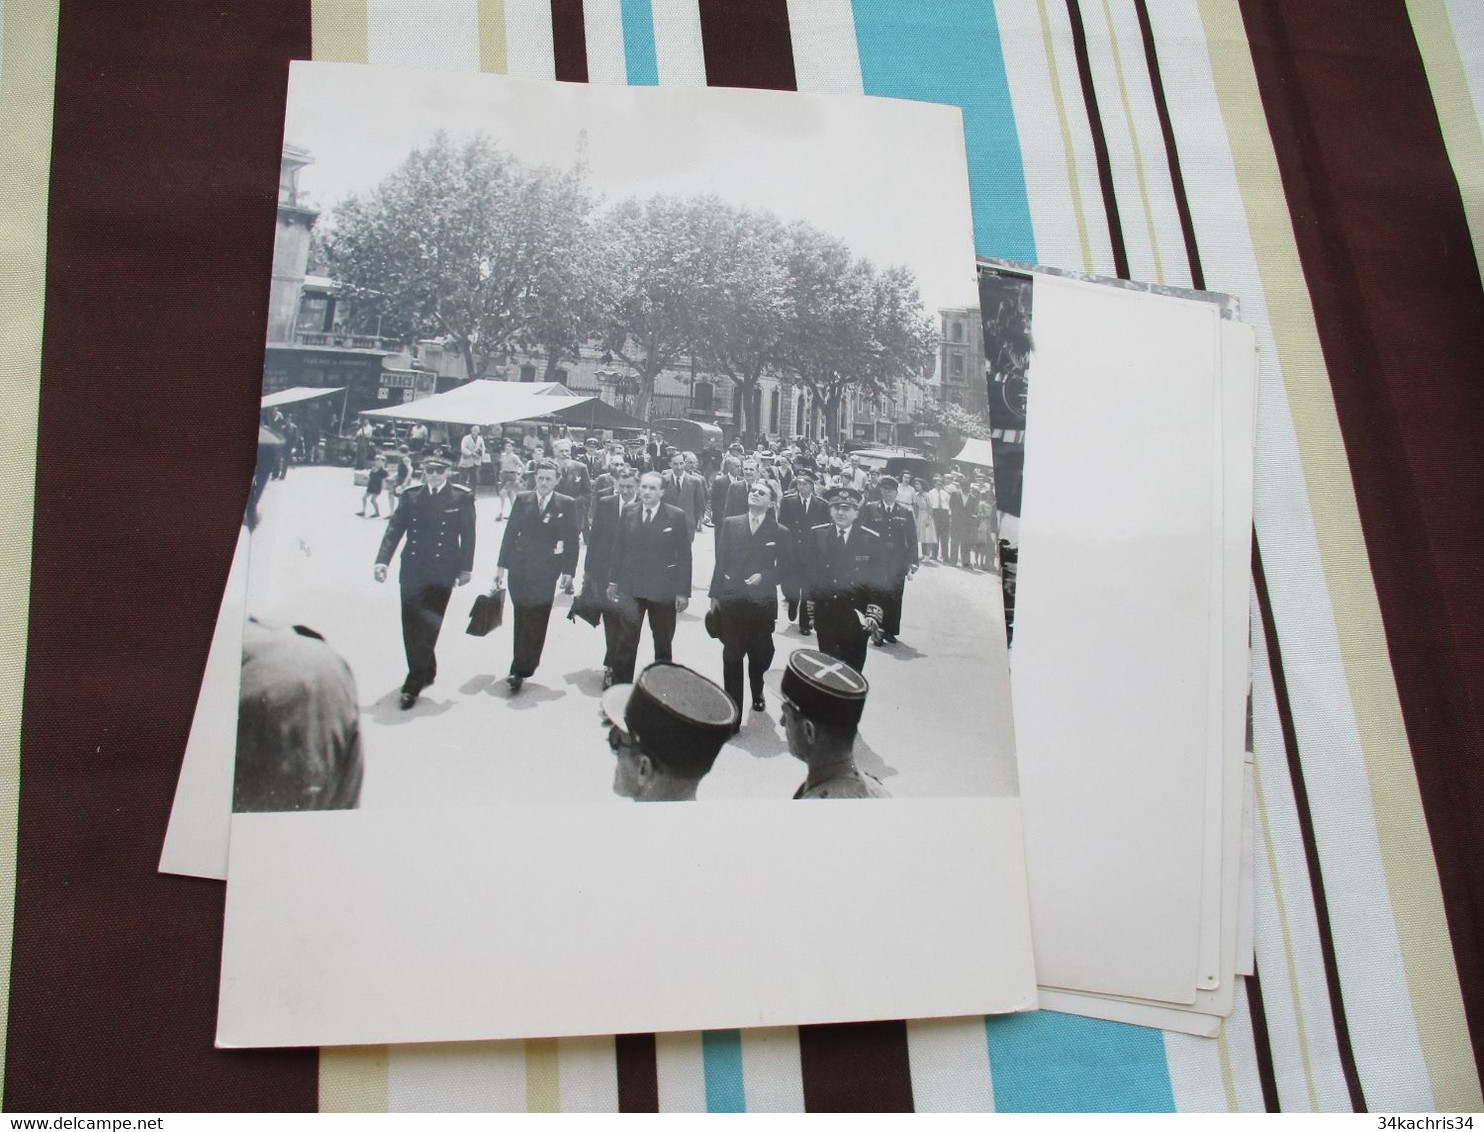 Congrès Séricicole Soie Alès Alais 194 + de 60 photos originales Desprats 18 X 24 environs cachet photographe au dos